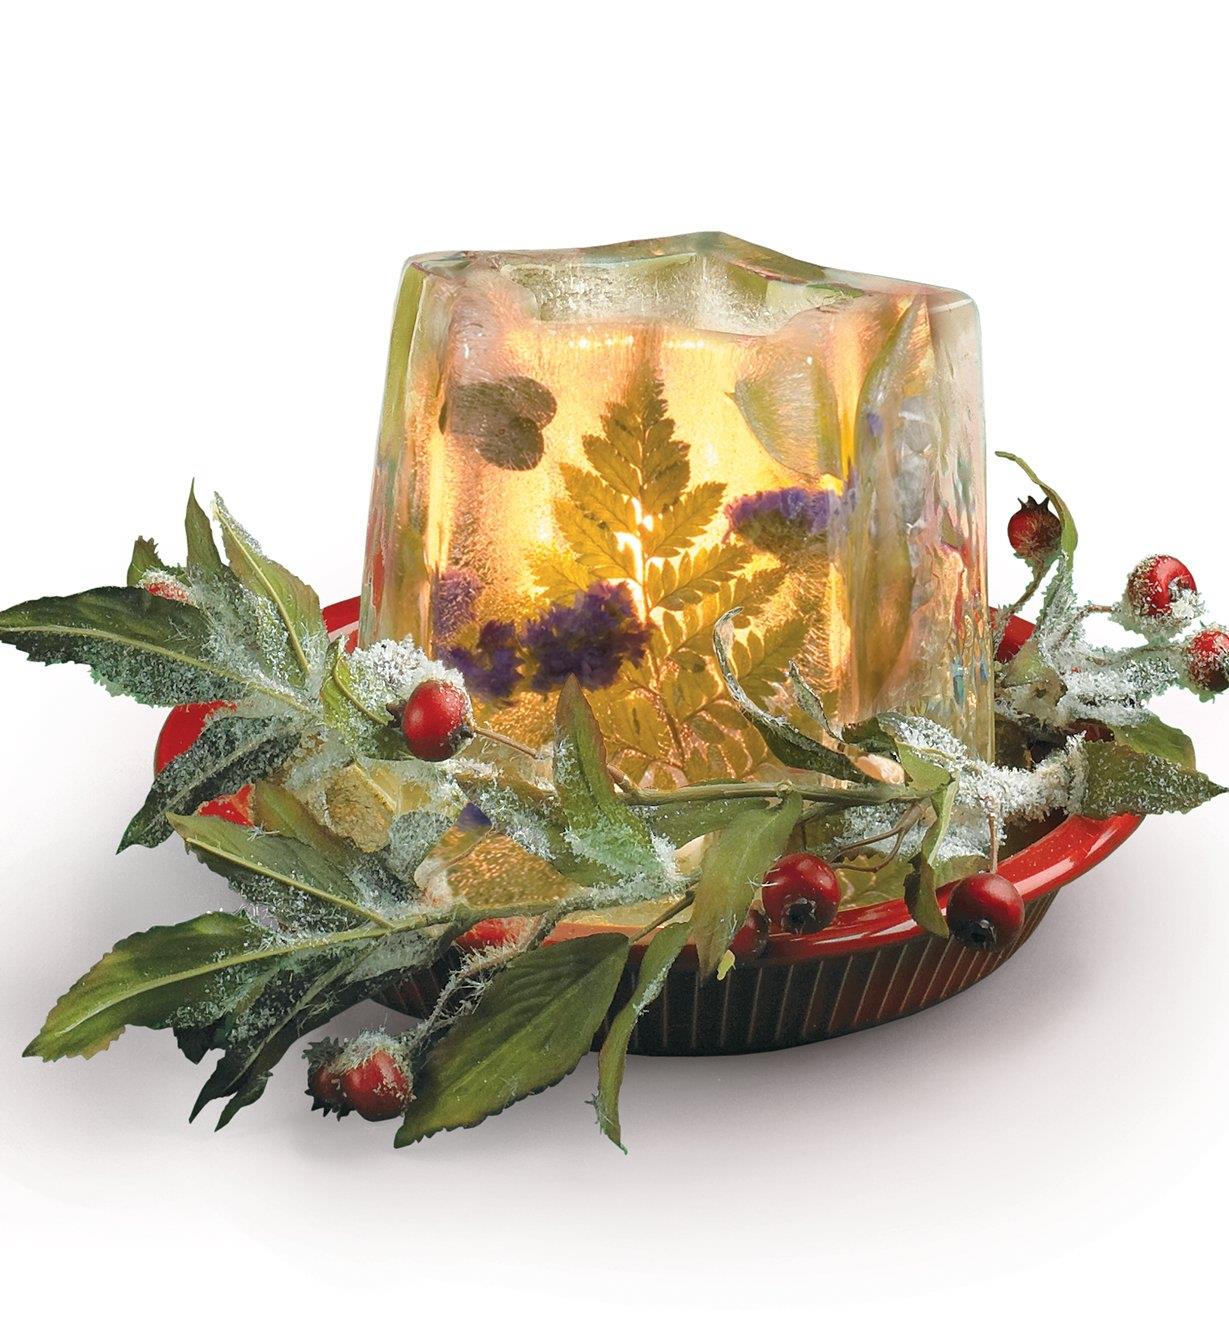 Lanterne de glace servant de centre de table avec des fleurs et des feuilles congelées à l’intérieur